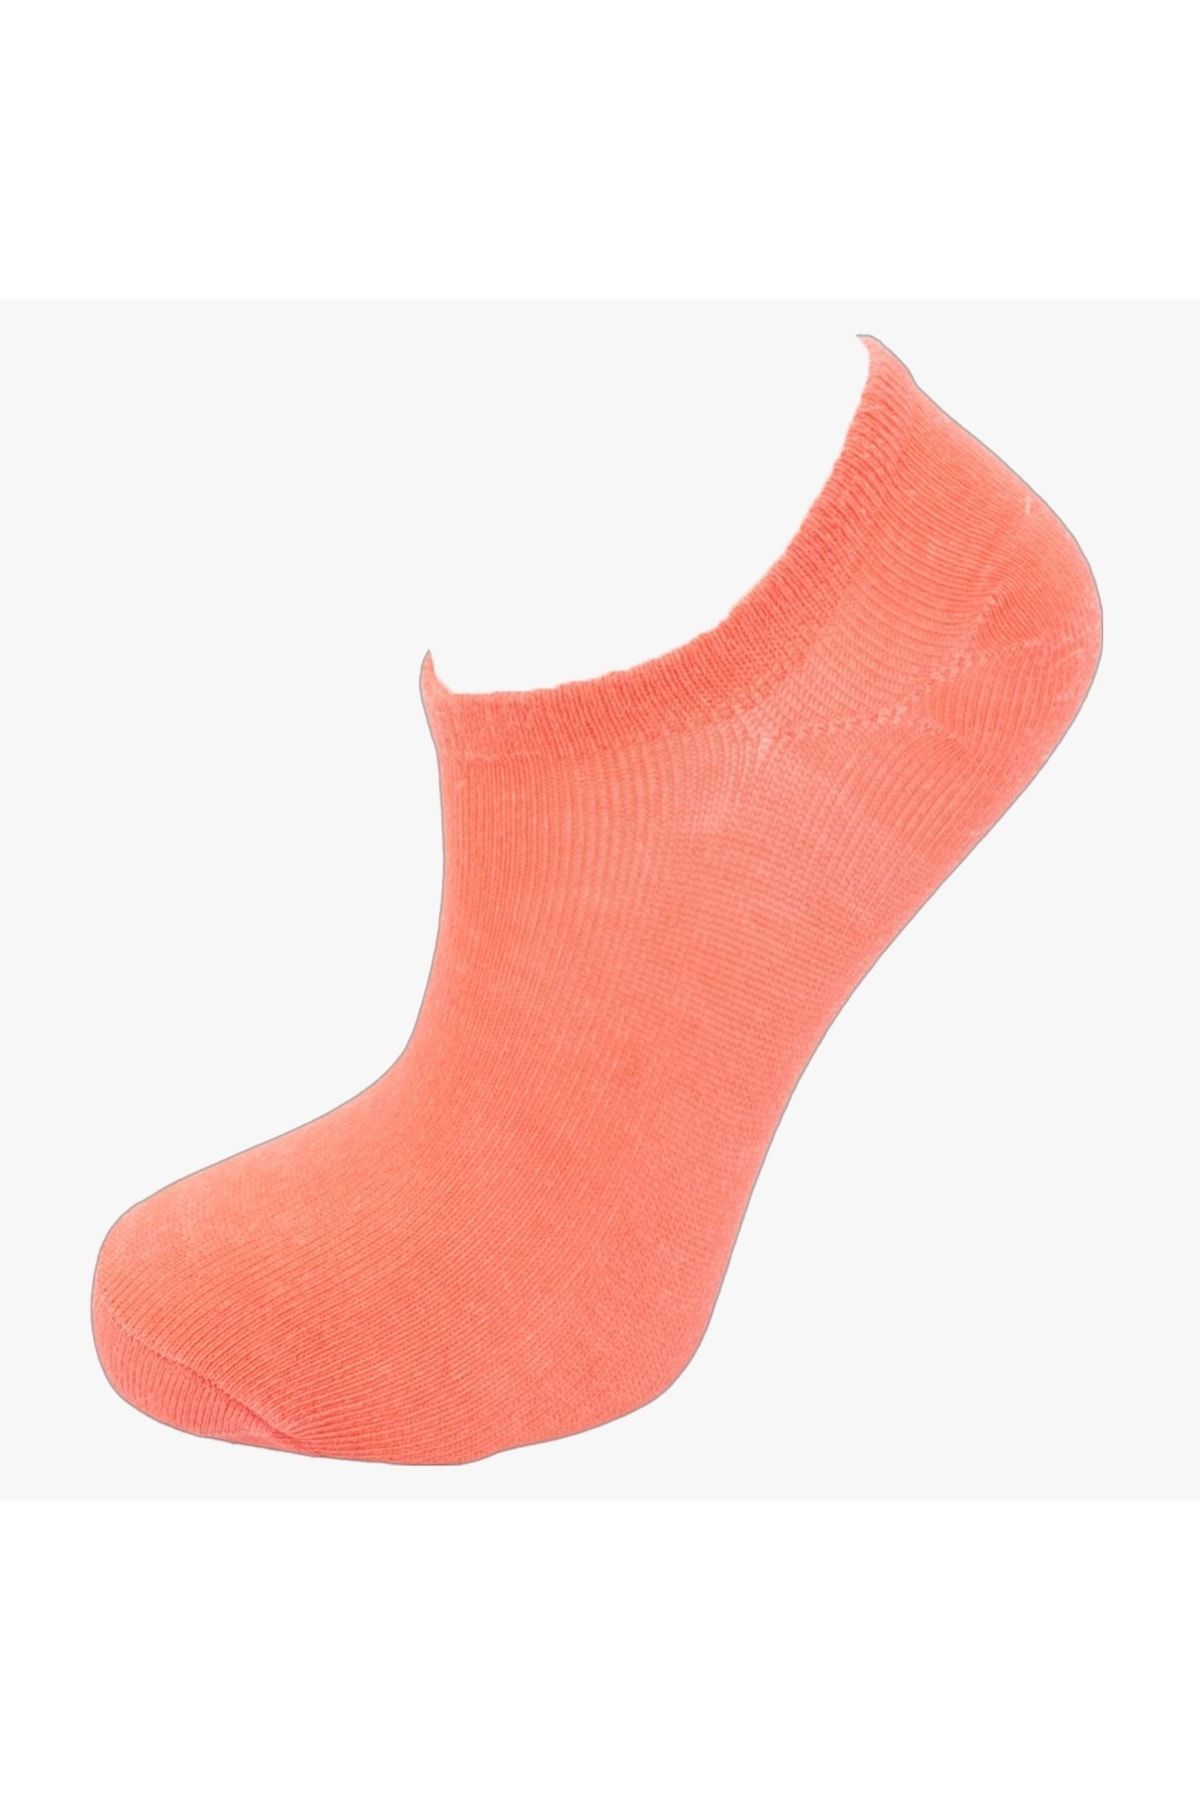 pazariz Kadın Somon Patik Çorap 10 Adet